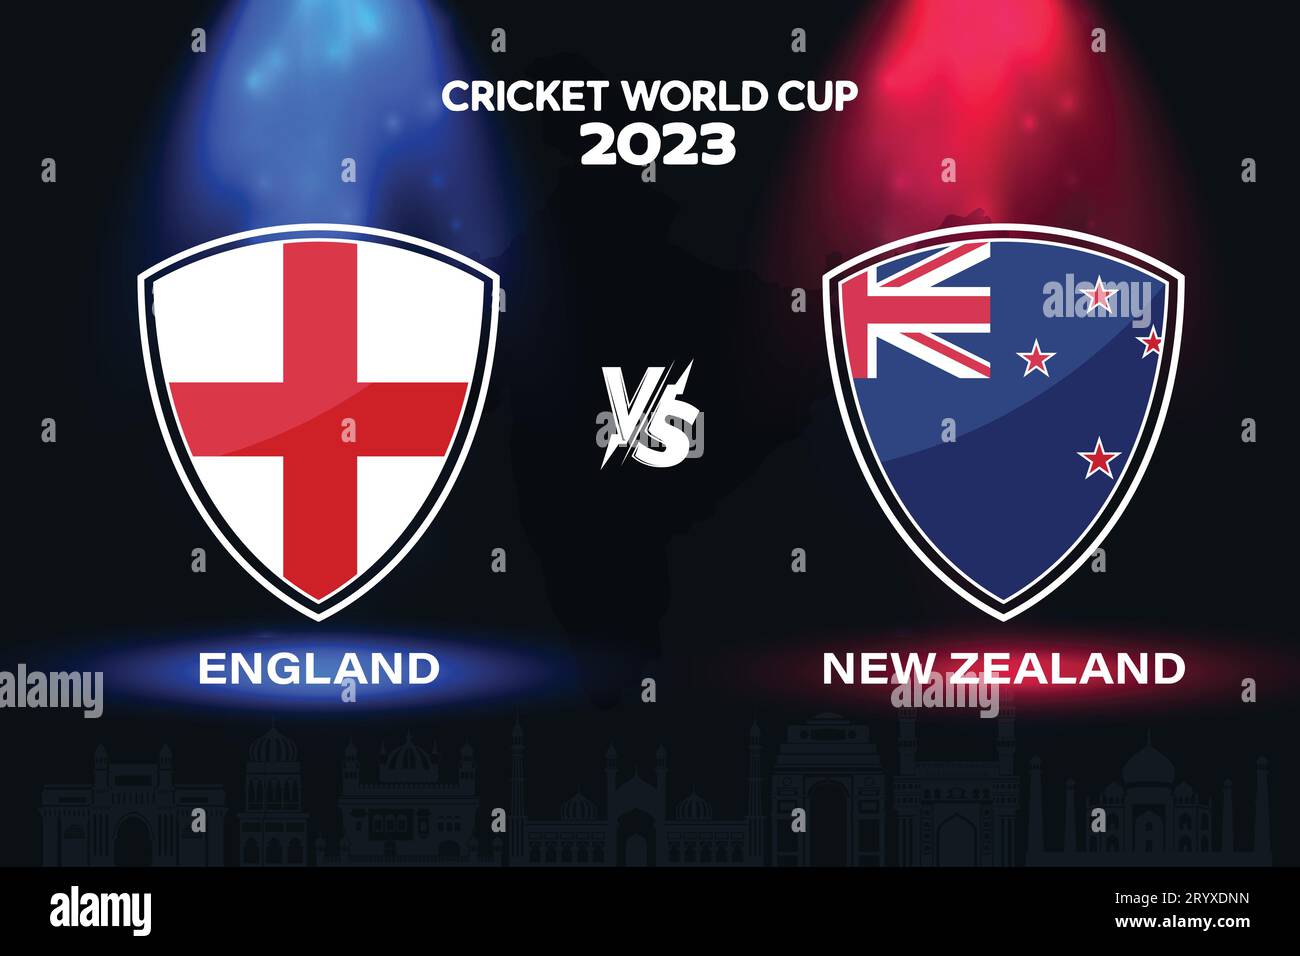 Angleterre vs Nouvelle-Zélande logo de drapeau international de cricket sur fond d'horizon indien pour la finale de la coupe du monde 2023. Vecteur EPS pour match sportif Illustration de Vecteur